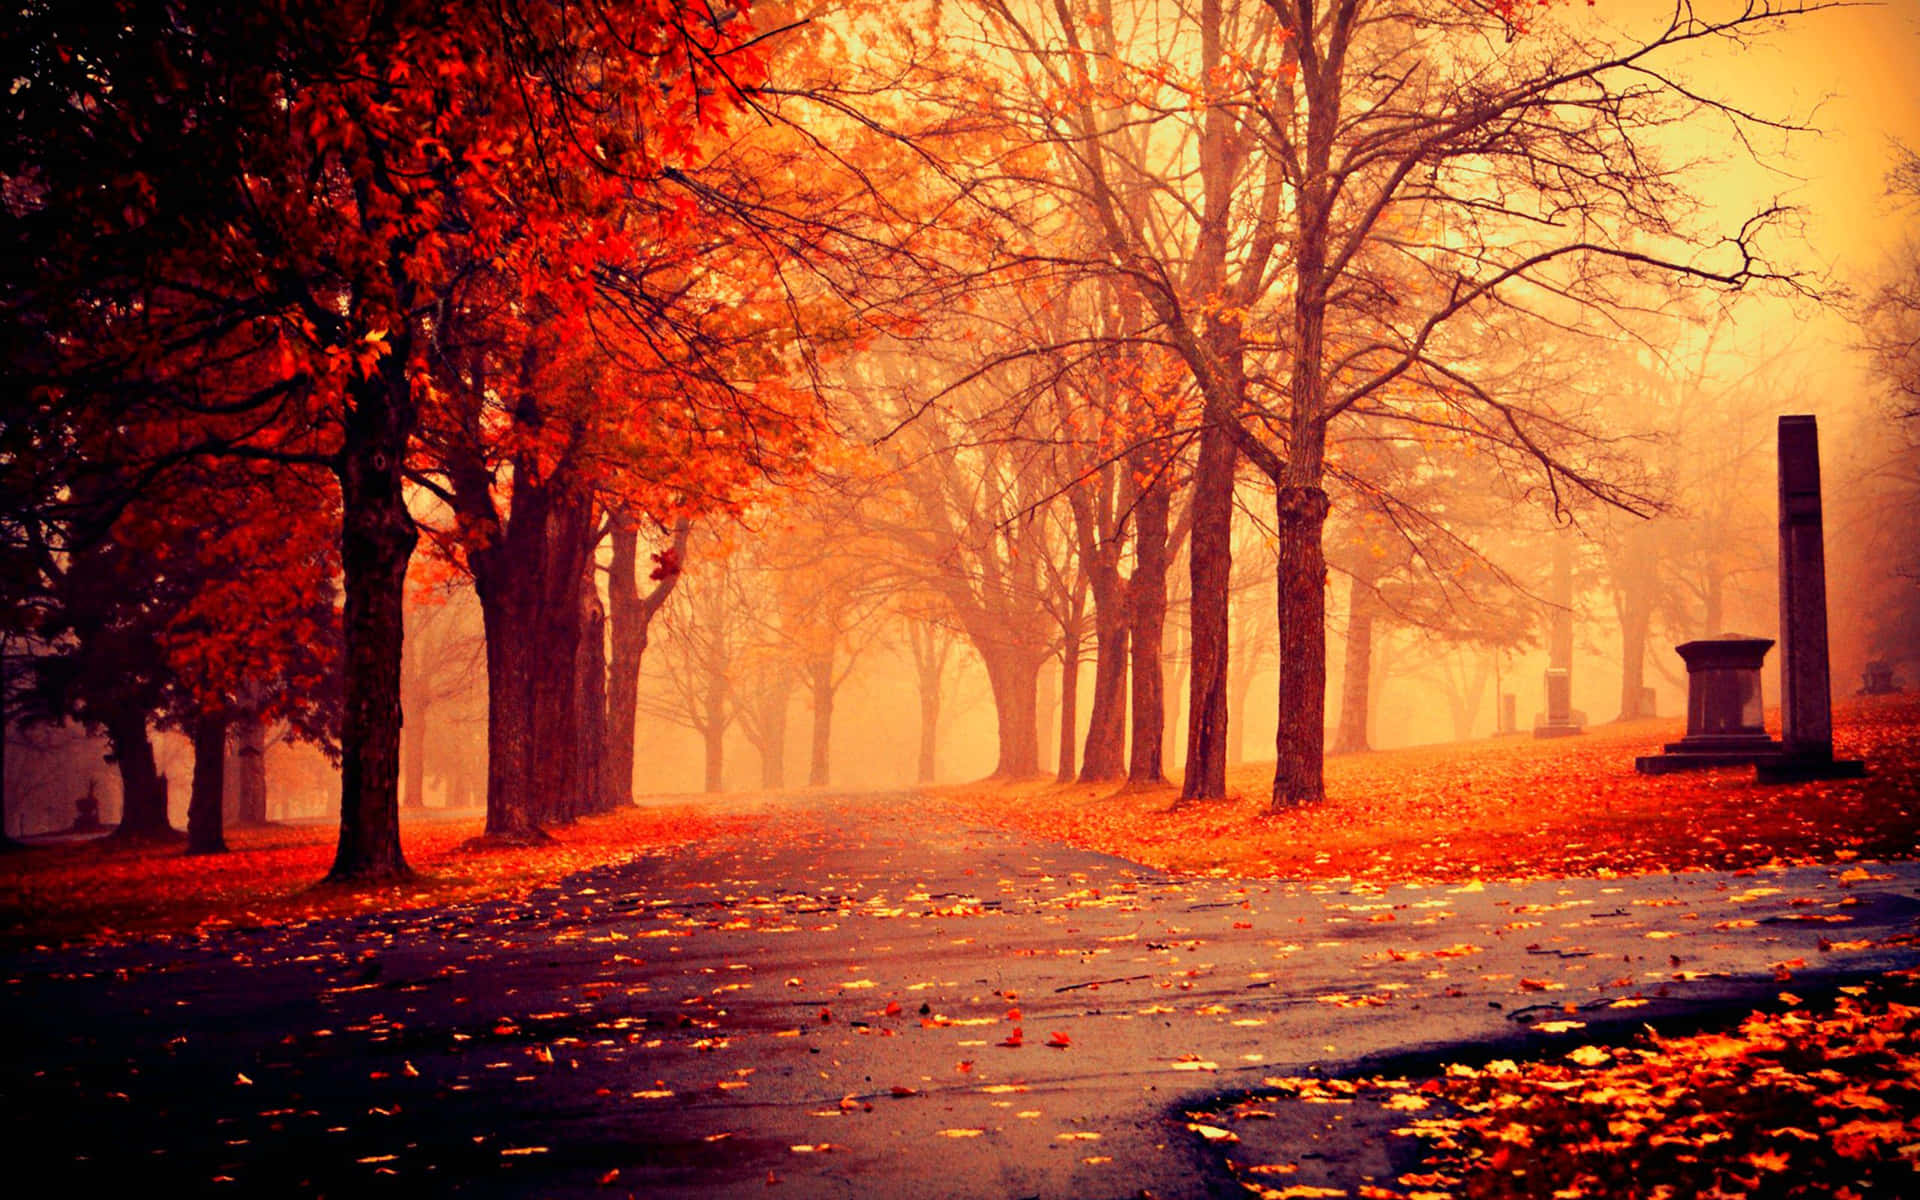 Autumn Images  Free Download on Freepik